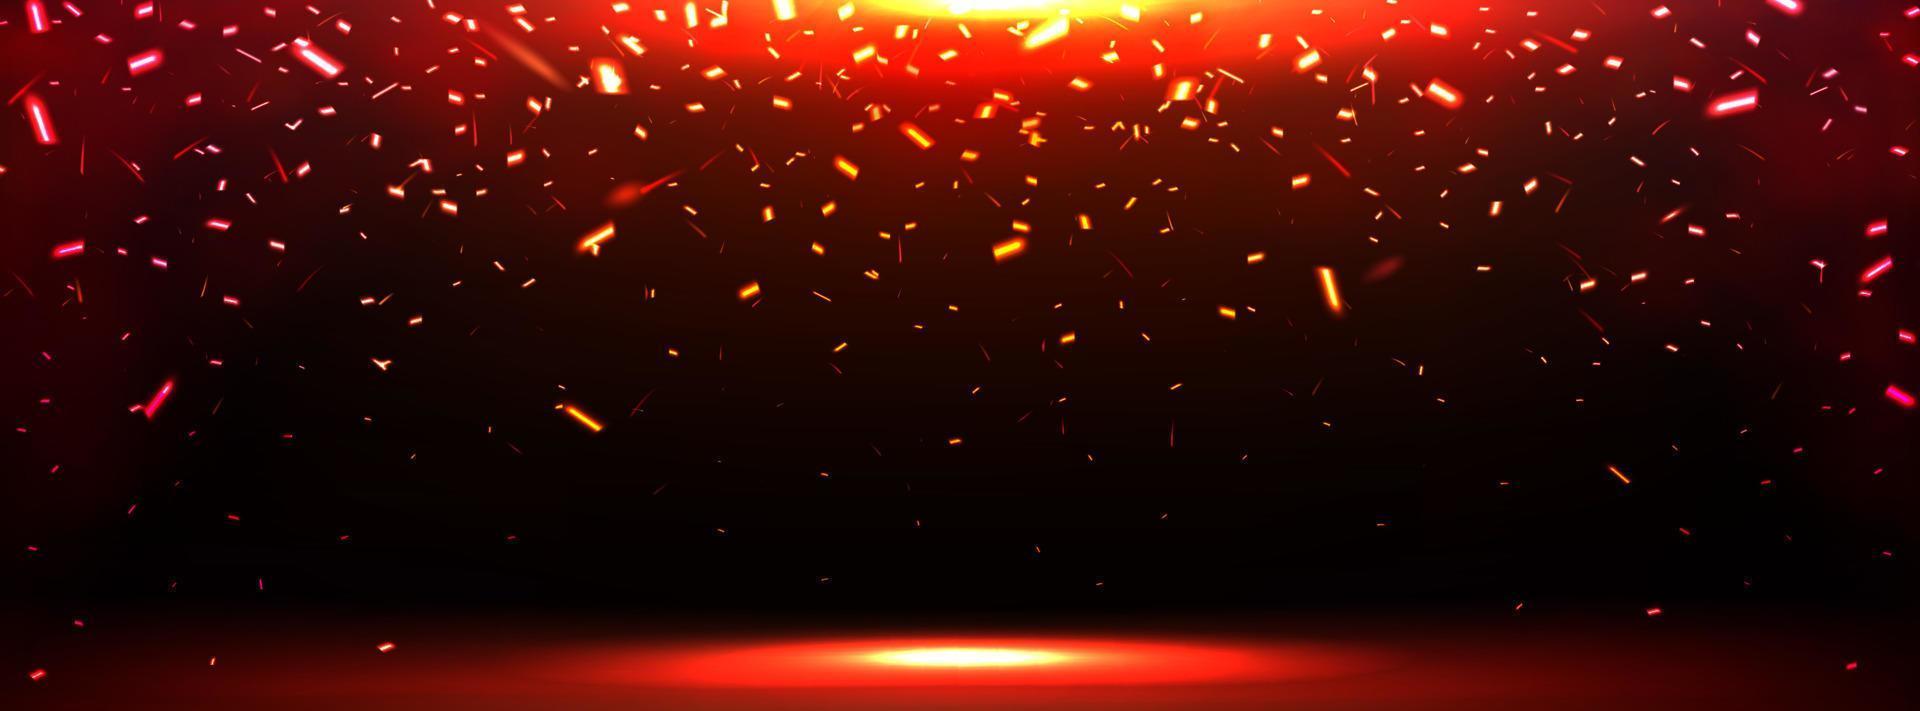 Burst-Effekt mit fallenden Feuerfunken vektor